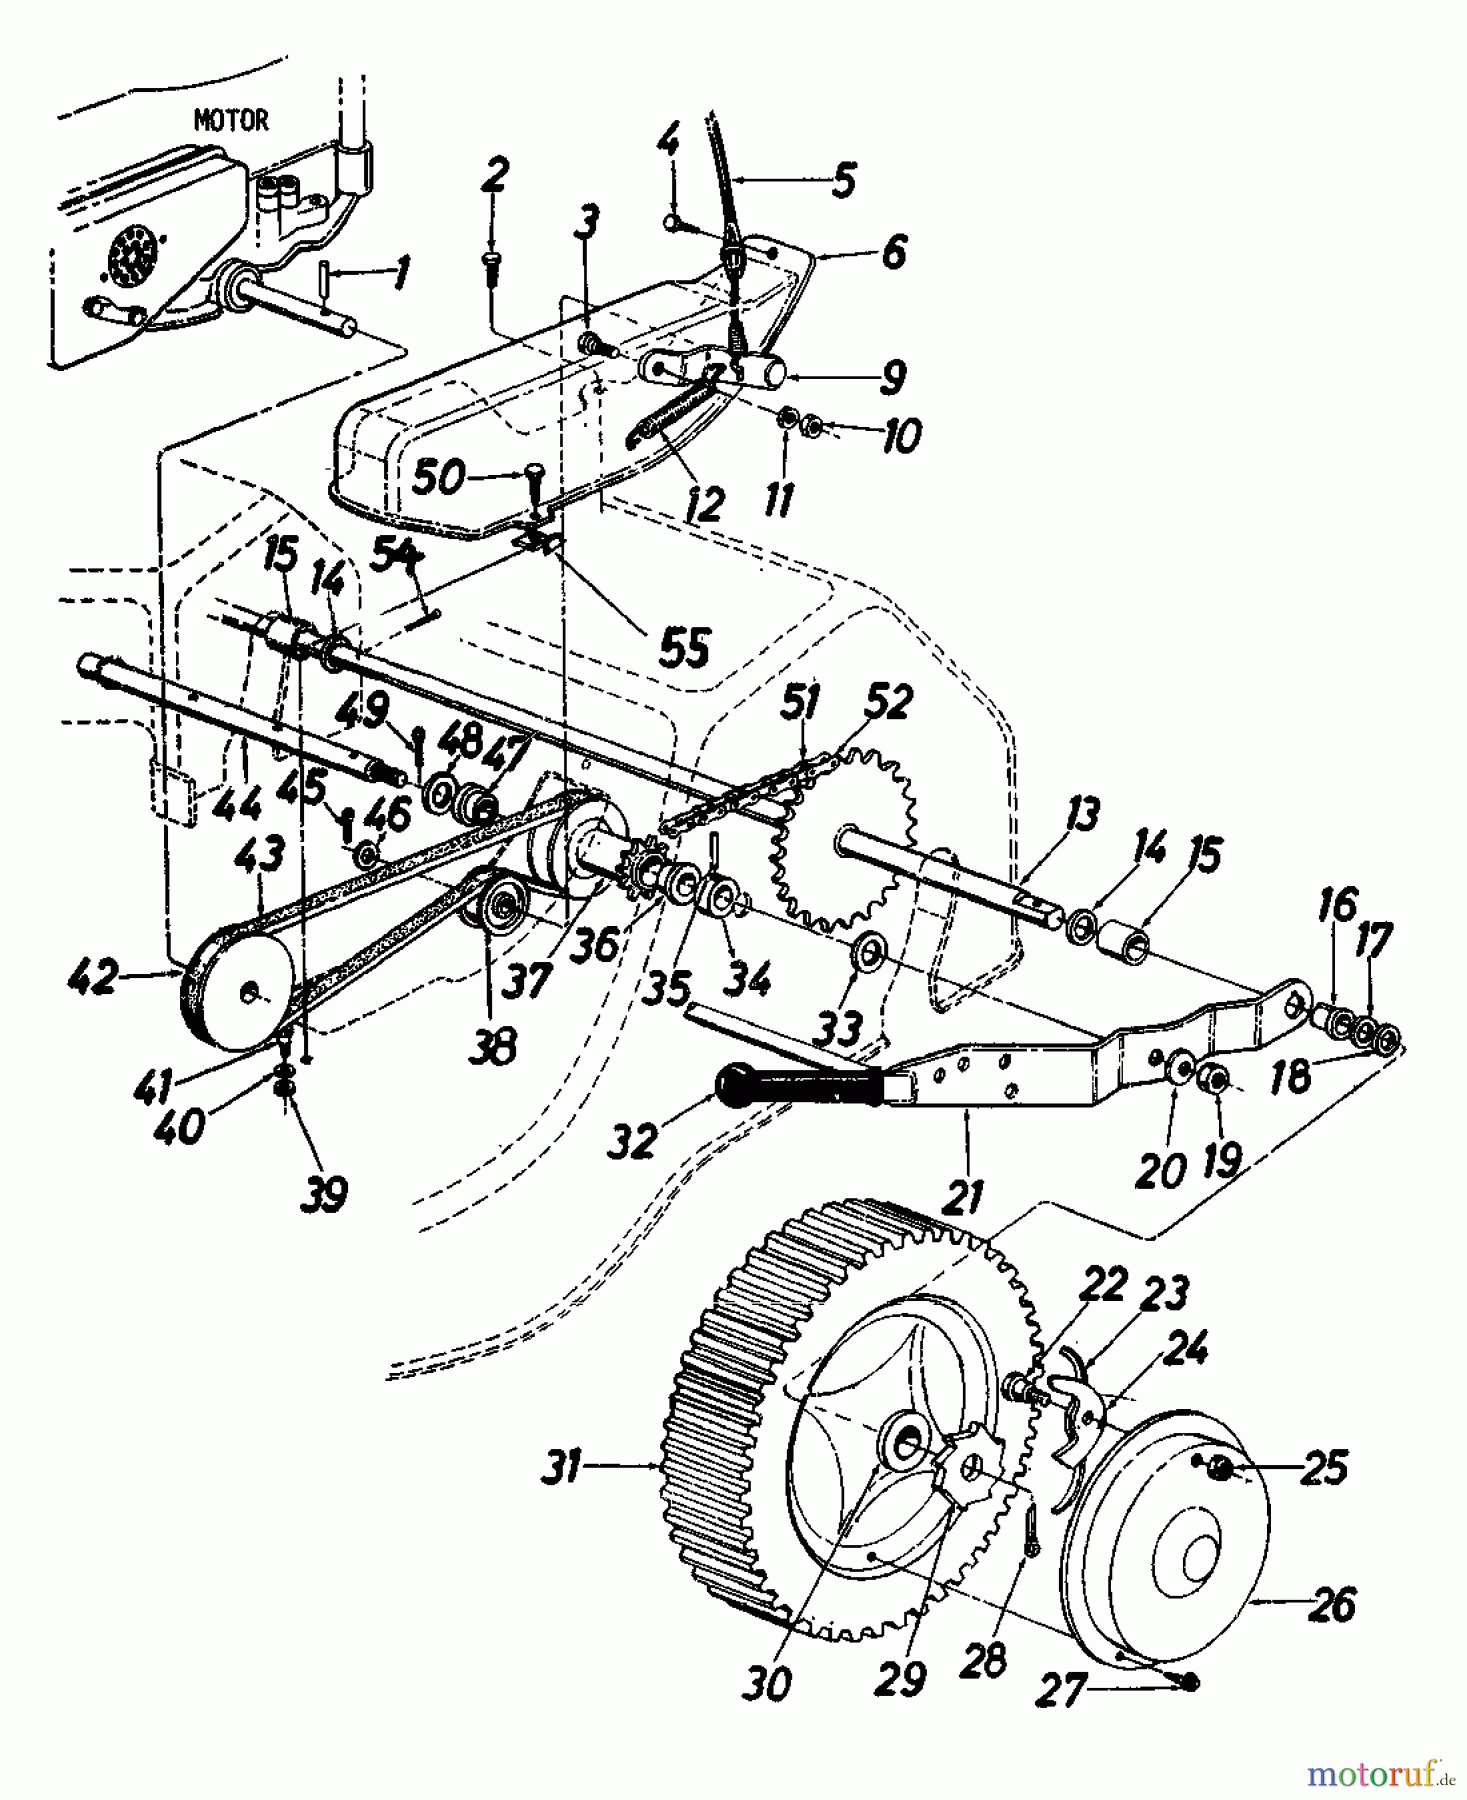  MTD Motormäher mit Antrieb REX-COMBI 56 SSL 125-3680  (1985) Fahrantrieb, Räder